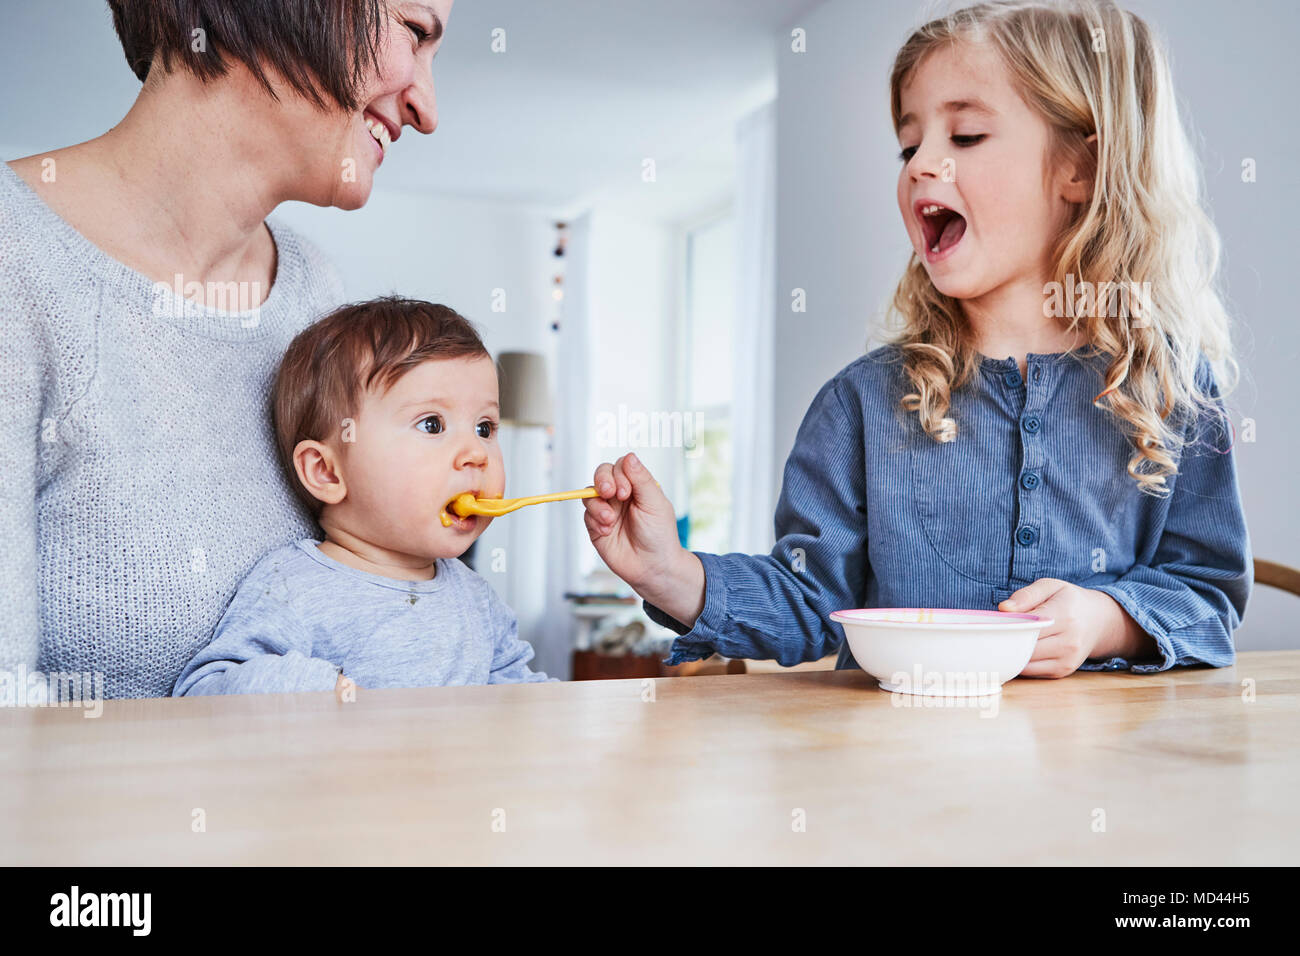 Assis à la table de cuisine, jeune fille à la cuillère nourrir bébé soeur Banque D'Images